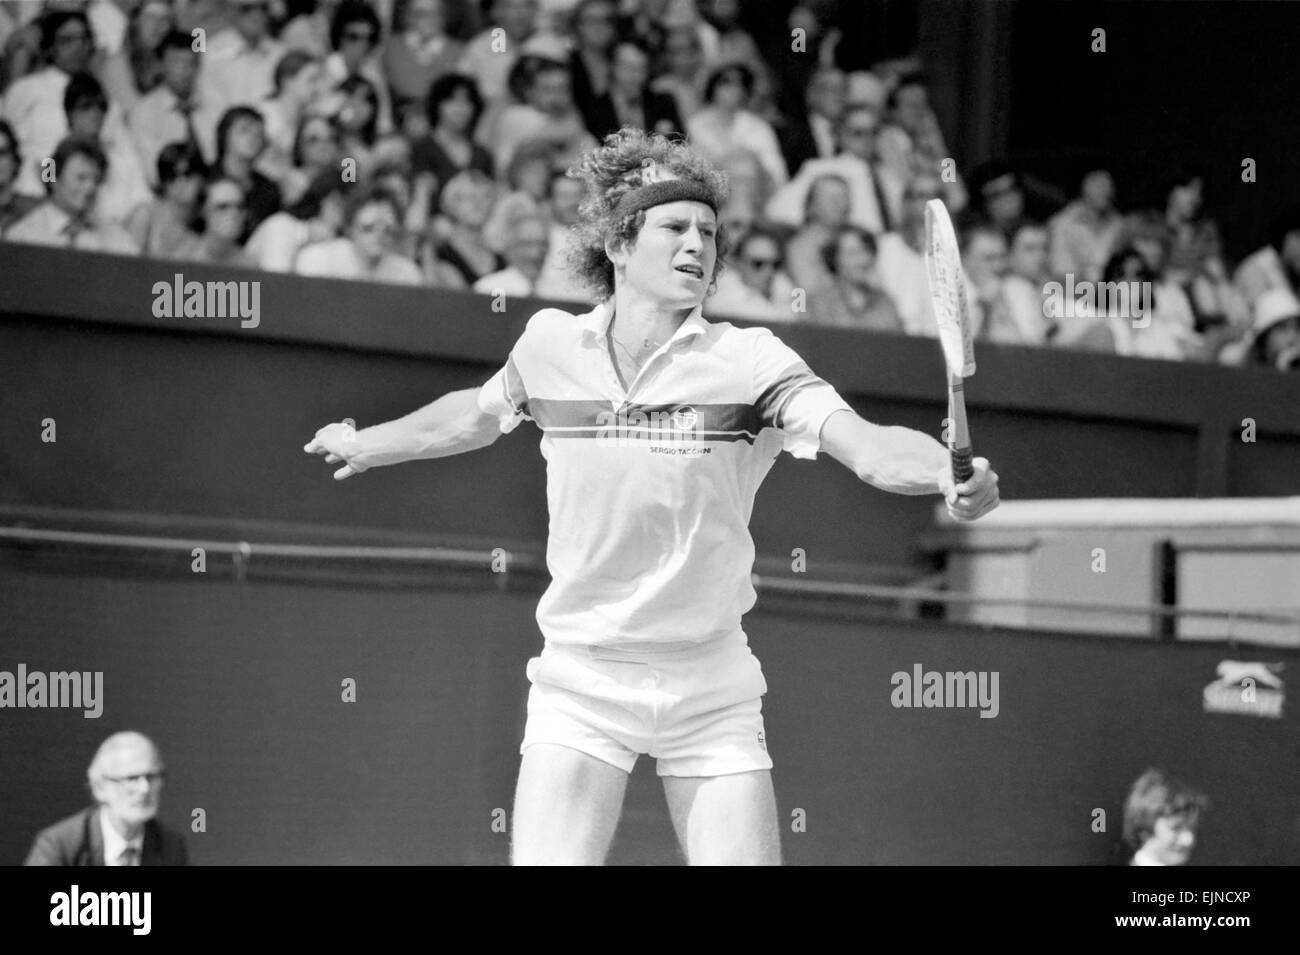 John McEnroe V Tom Gullikson, Erstrunden Match in Wimbledon am Court Nummer eins, Montag, 22. Juni 1981. John McEnroe war zwei Brennpunkte vom geworfen aus Wimbledon. Die Nummer zwei Samen erhielt eine öffentliche waring und 2 Strafpunkte dann angedockt war, als er Tom Gullikson 7-6, 7-5 schlagen. 6: 3 in einer schlechten temperierten Konfrontation auf Court One. McEnroe die Warnung kam, nachdem er zornig einen Schläger zertrümmert, Stempeln auf den Saiten und Riss Sie den Griff. Dann wurde er die zwei Strafpunkte für den Aufruf von Schiedsrichter Edward James "die Gruben der Welt" und "eine inkompetente Narr" verurteilt. Stockfoto